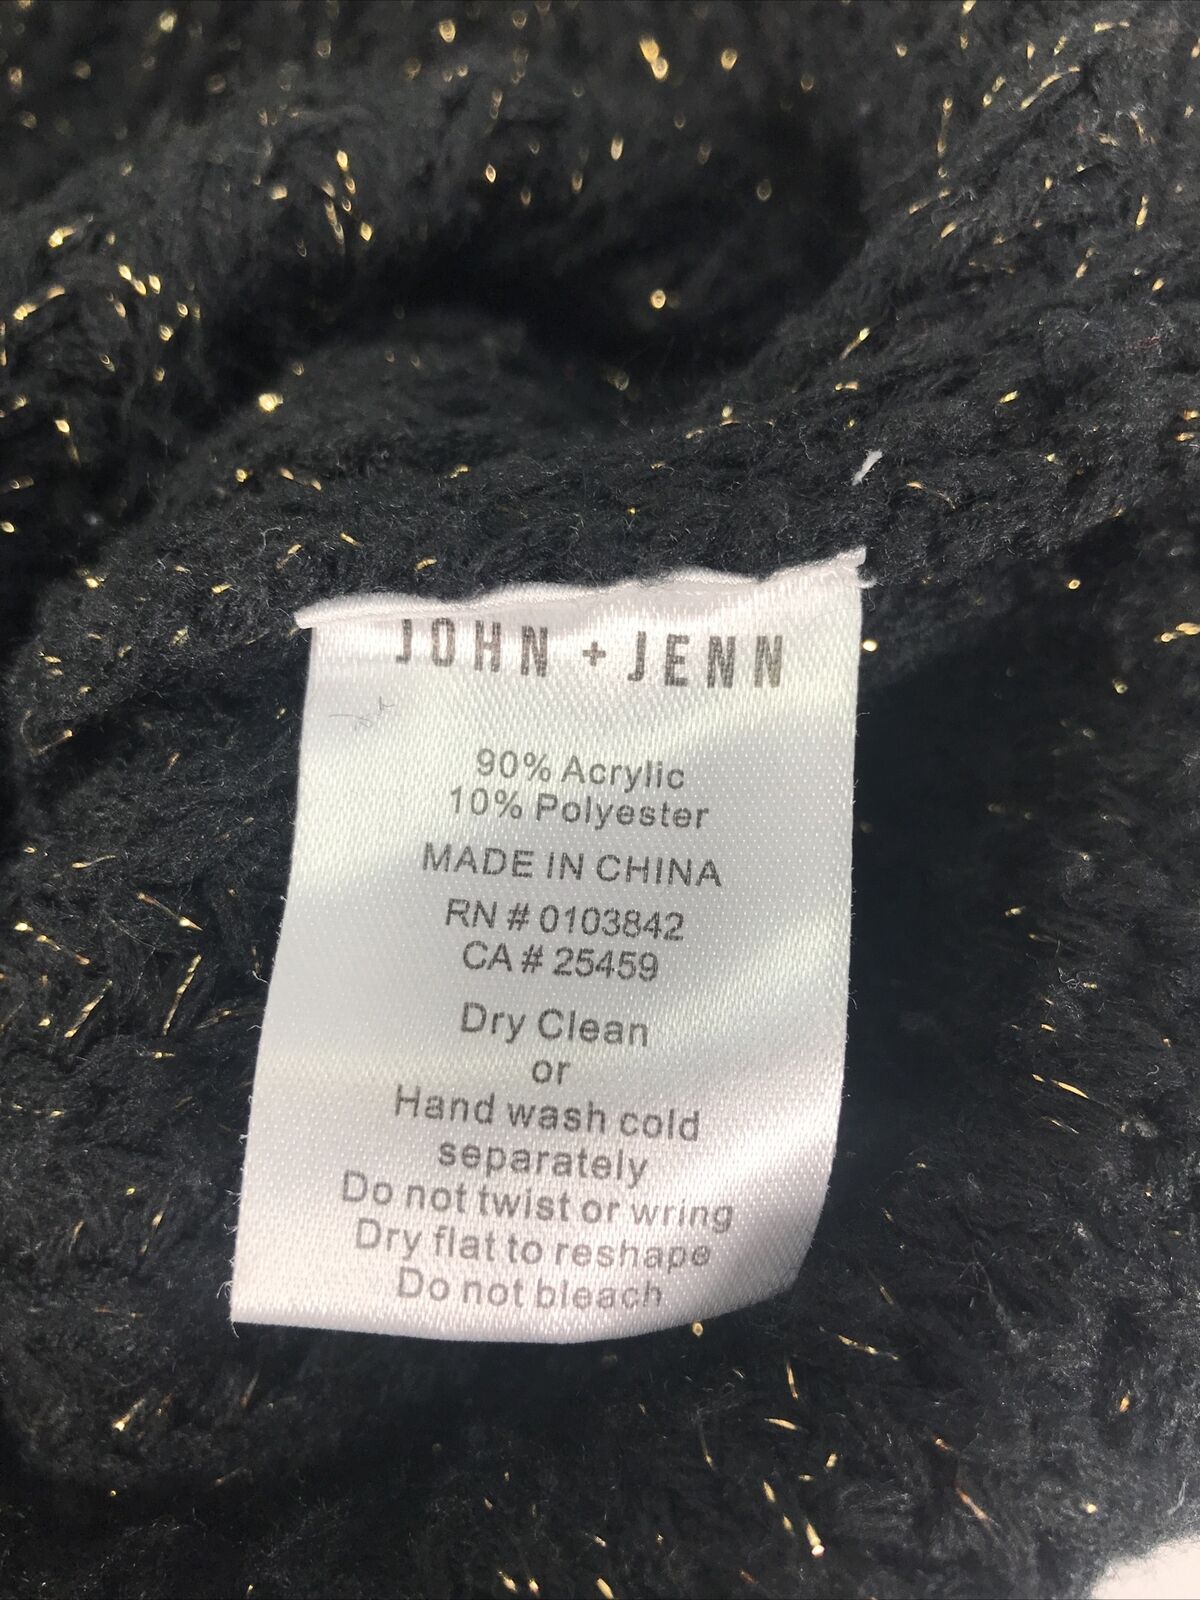 John + Jenn Women's Black/Gold Chunky Knit V-Neck Sweater Sz M